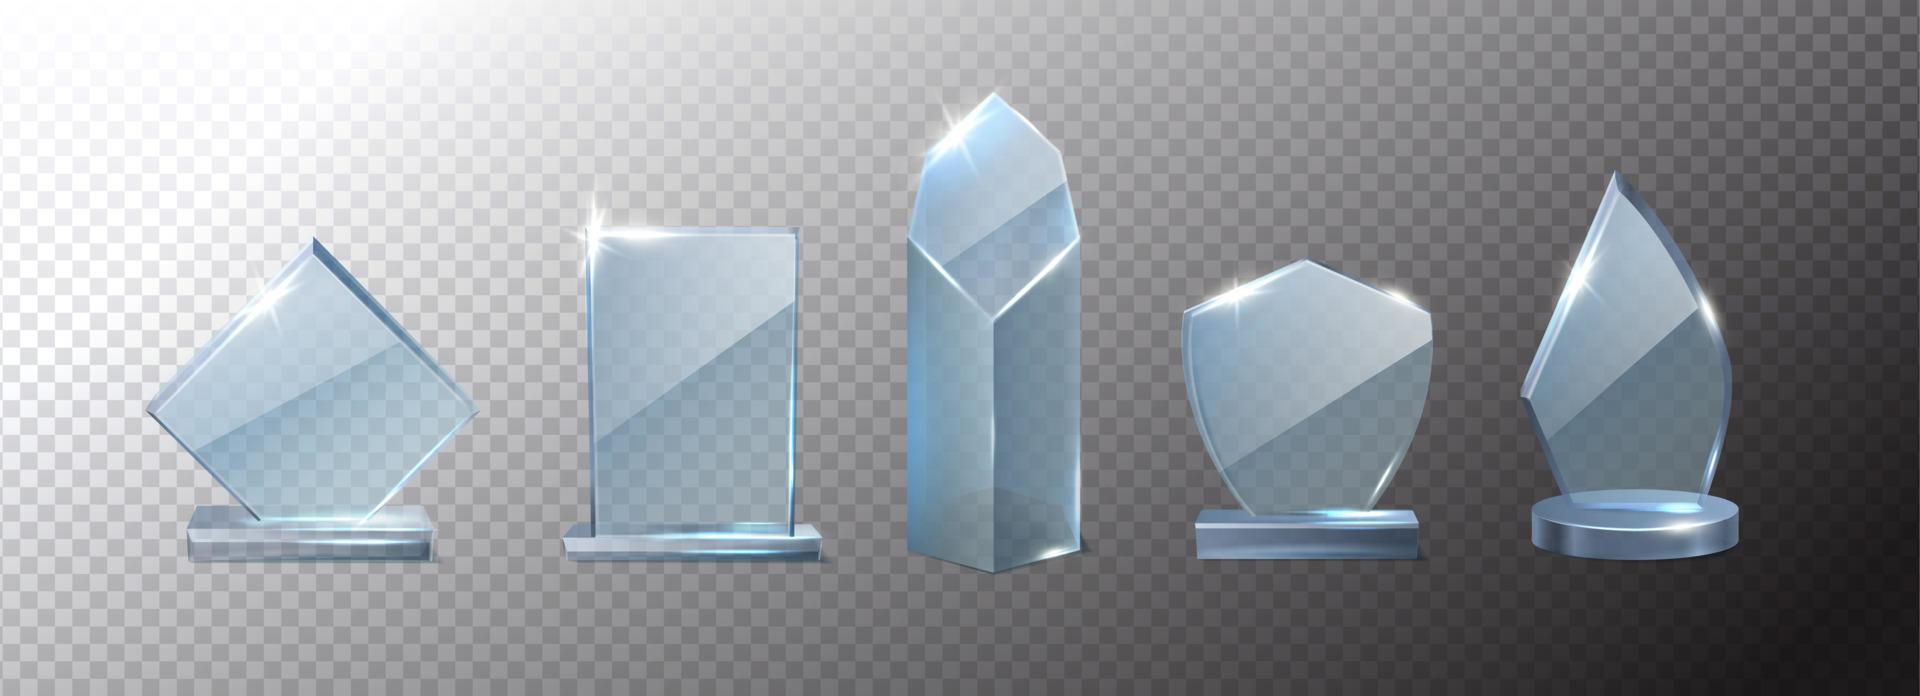 Set di icone vettoriali realistiche 3d. collezione di forme diverse basi trofeo in cristallo di vetro.